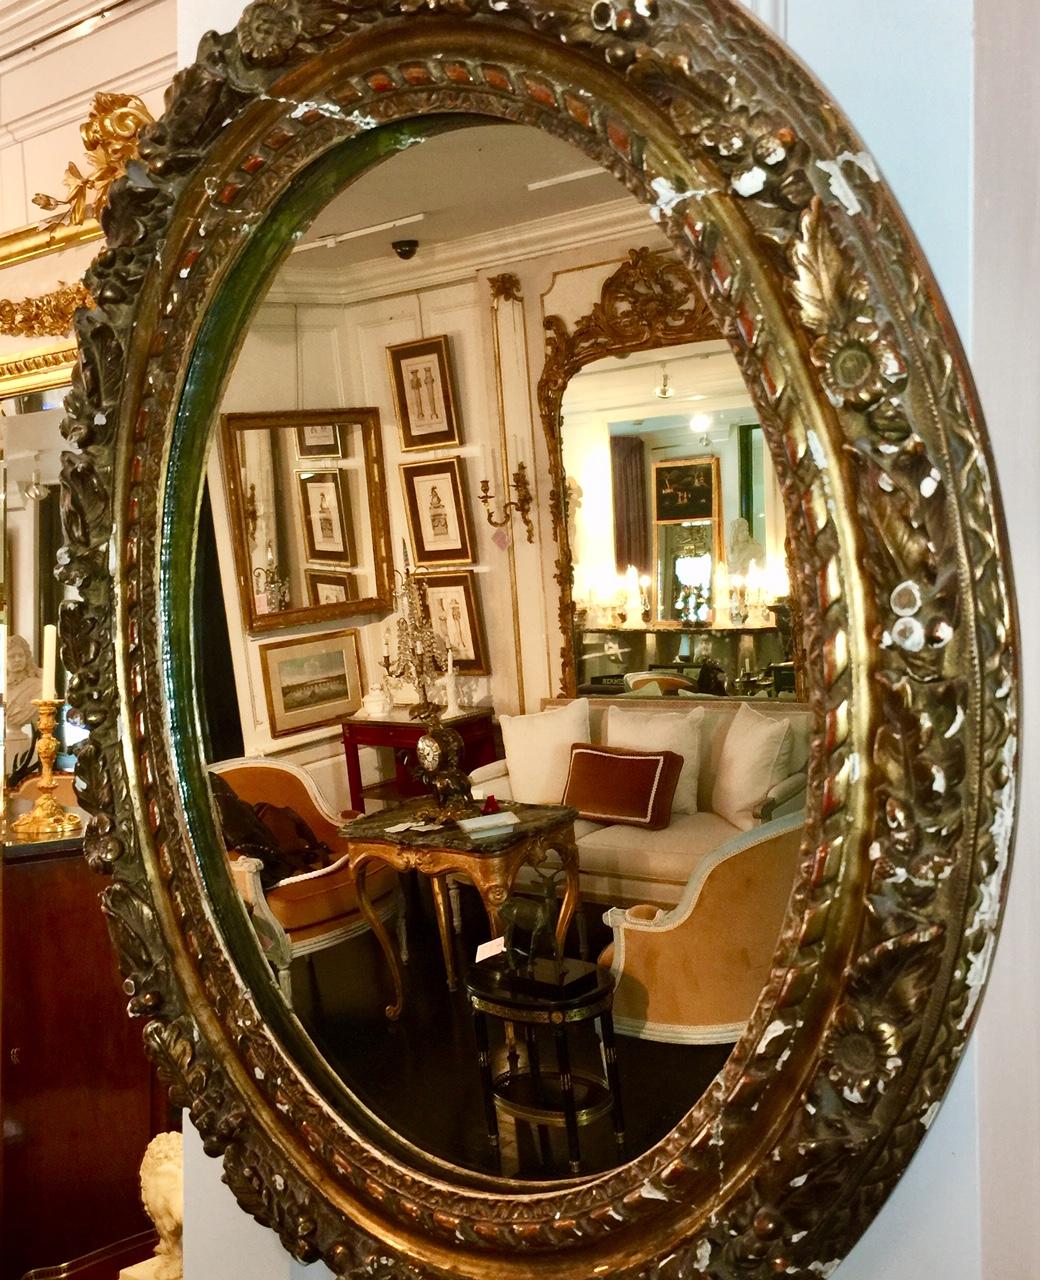 Français, style néoclassique. Ce miroir biseauté d'époque Louis XVI, XVIIIe siècle, présente un cadre en bois sculpté à la feuille d'or, magnifiquement orné de fleurs, de baies et de feuilles. Le cadre ovale entoure le miroir biseauté d'origine, qui